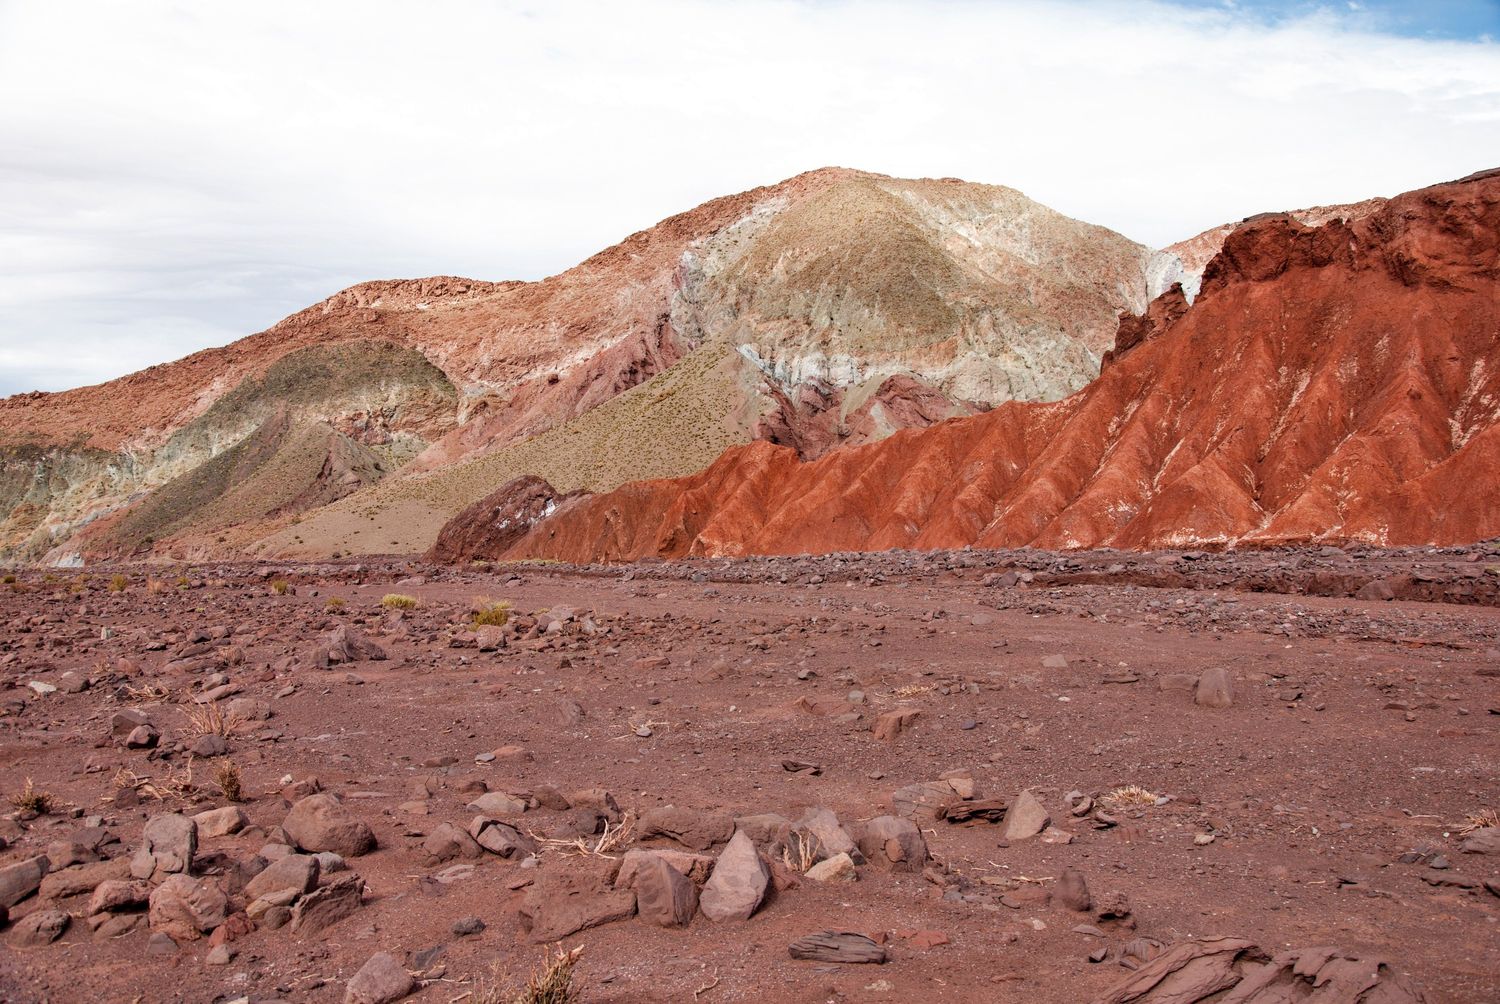 Mountains in the Valle del Arco Iris near San Pedro de Atacama.